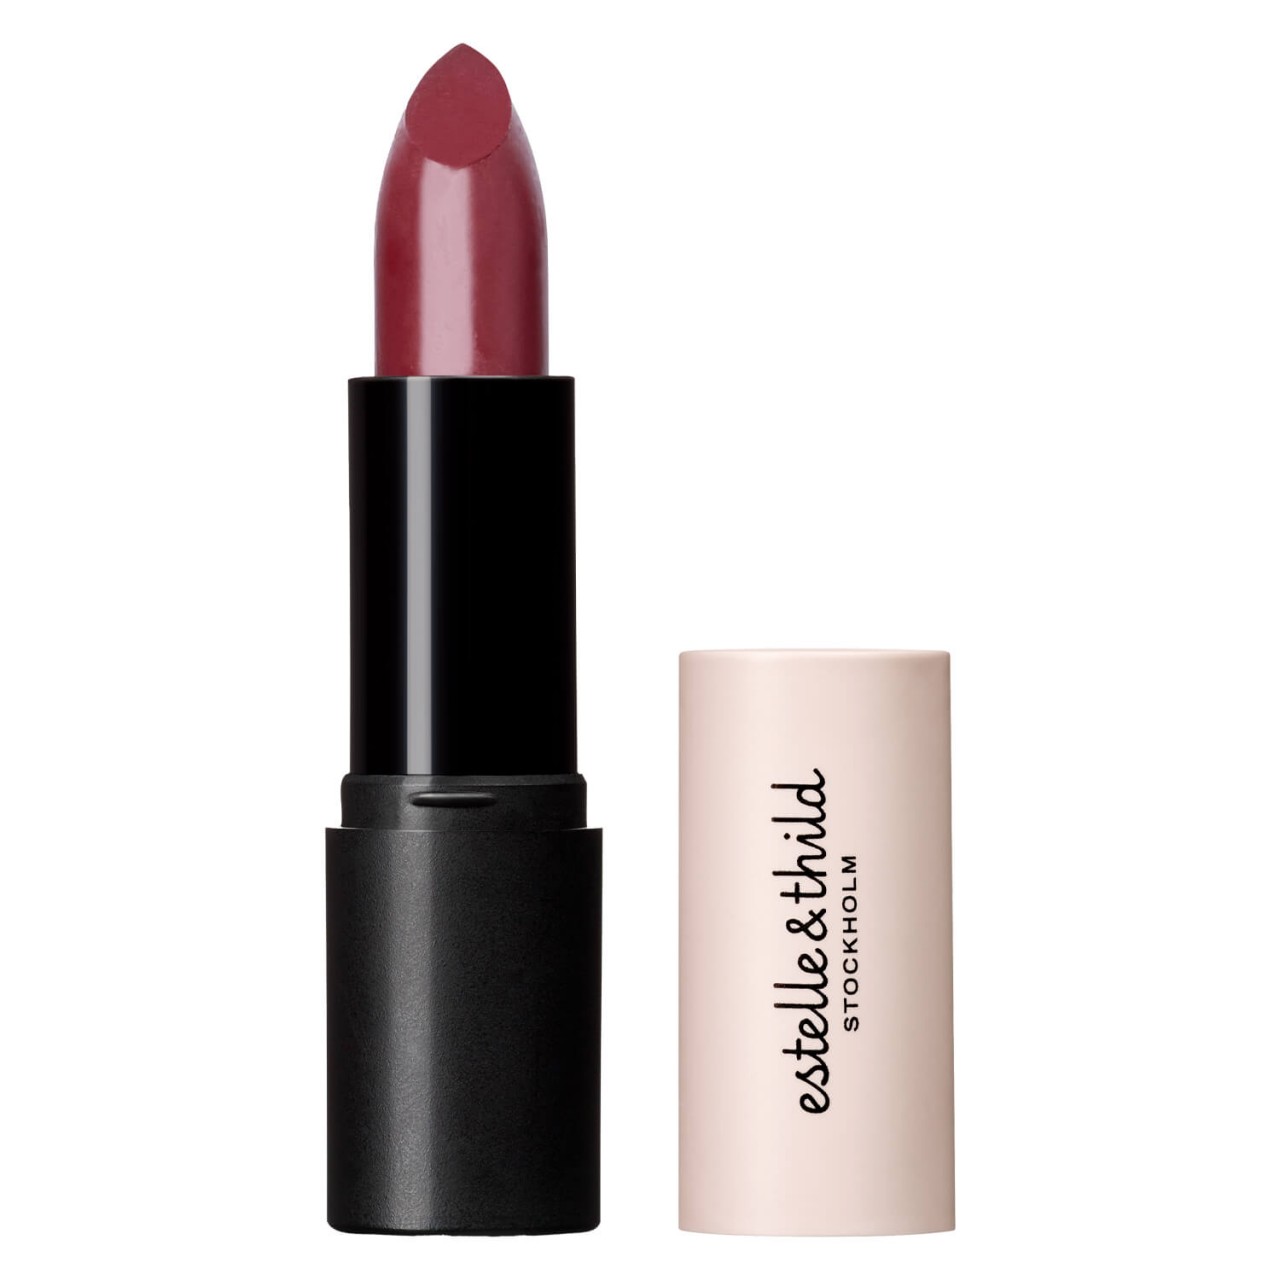 Estelle&Thild Make-Up - Cream Lipstick Rosewood von Estelle&Thild